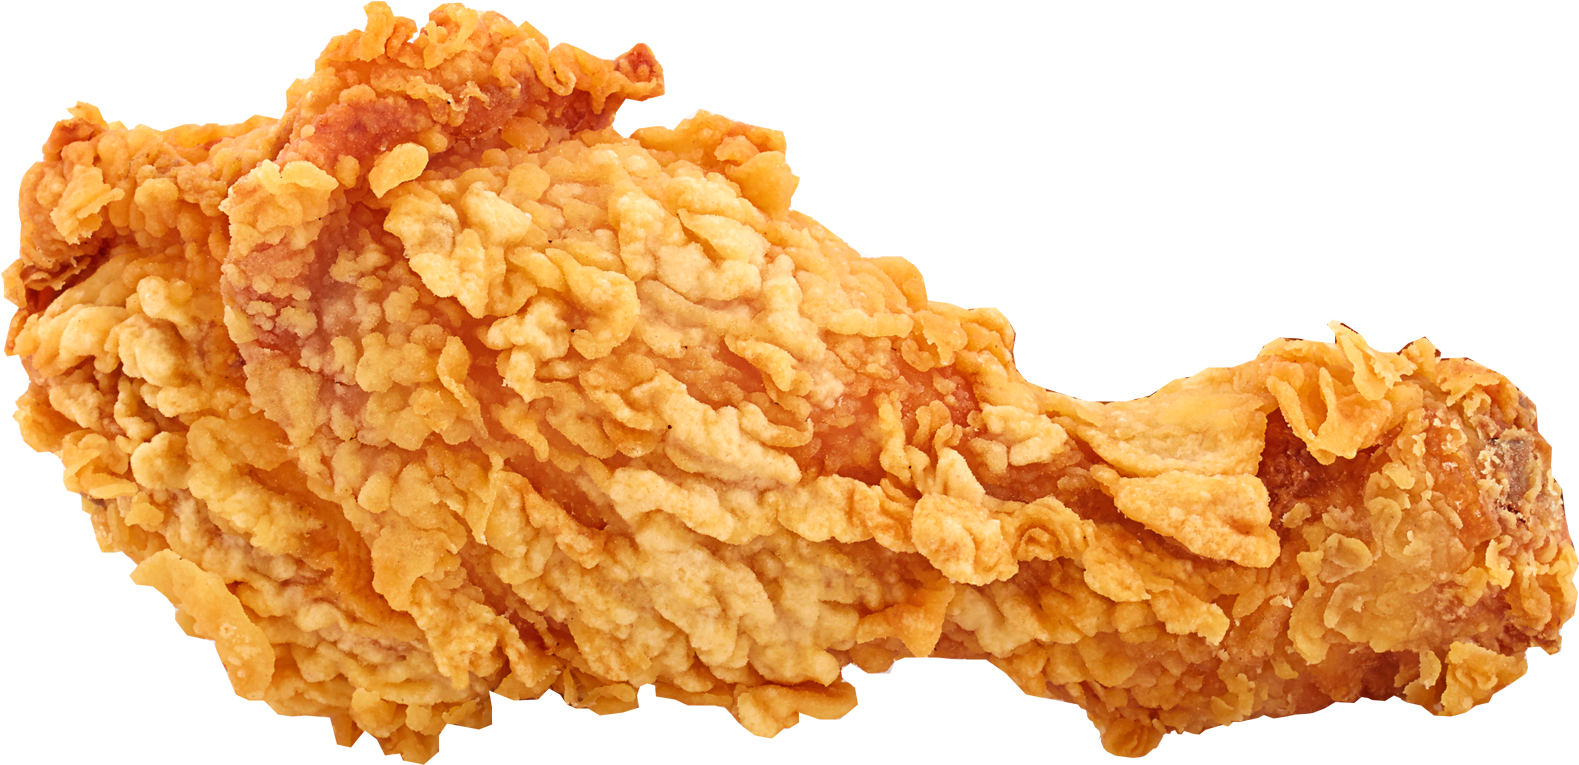 Imagen Transparente de PNG de pollo crujiente frito